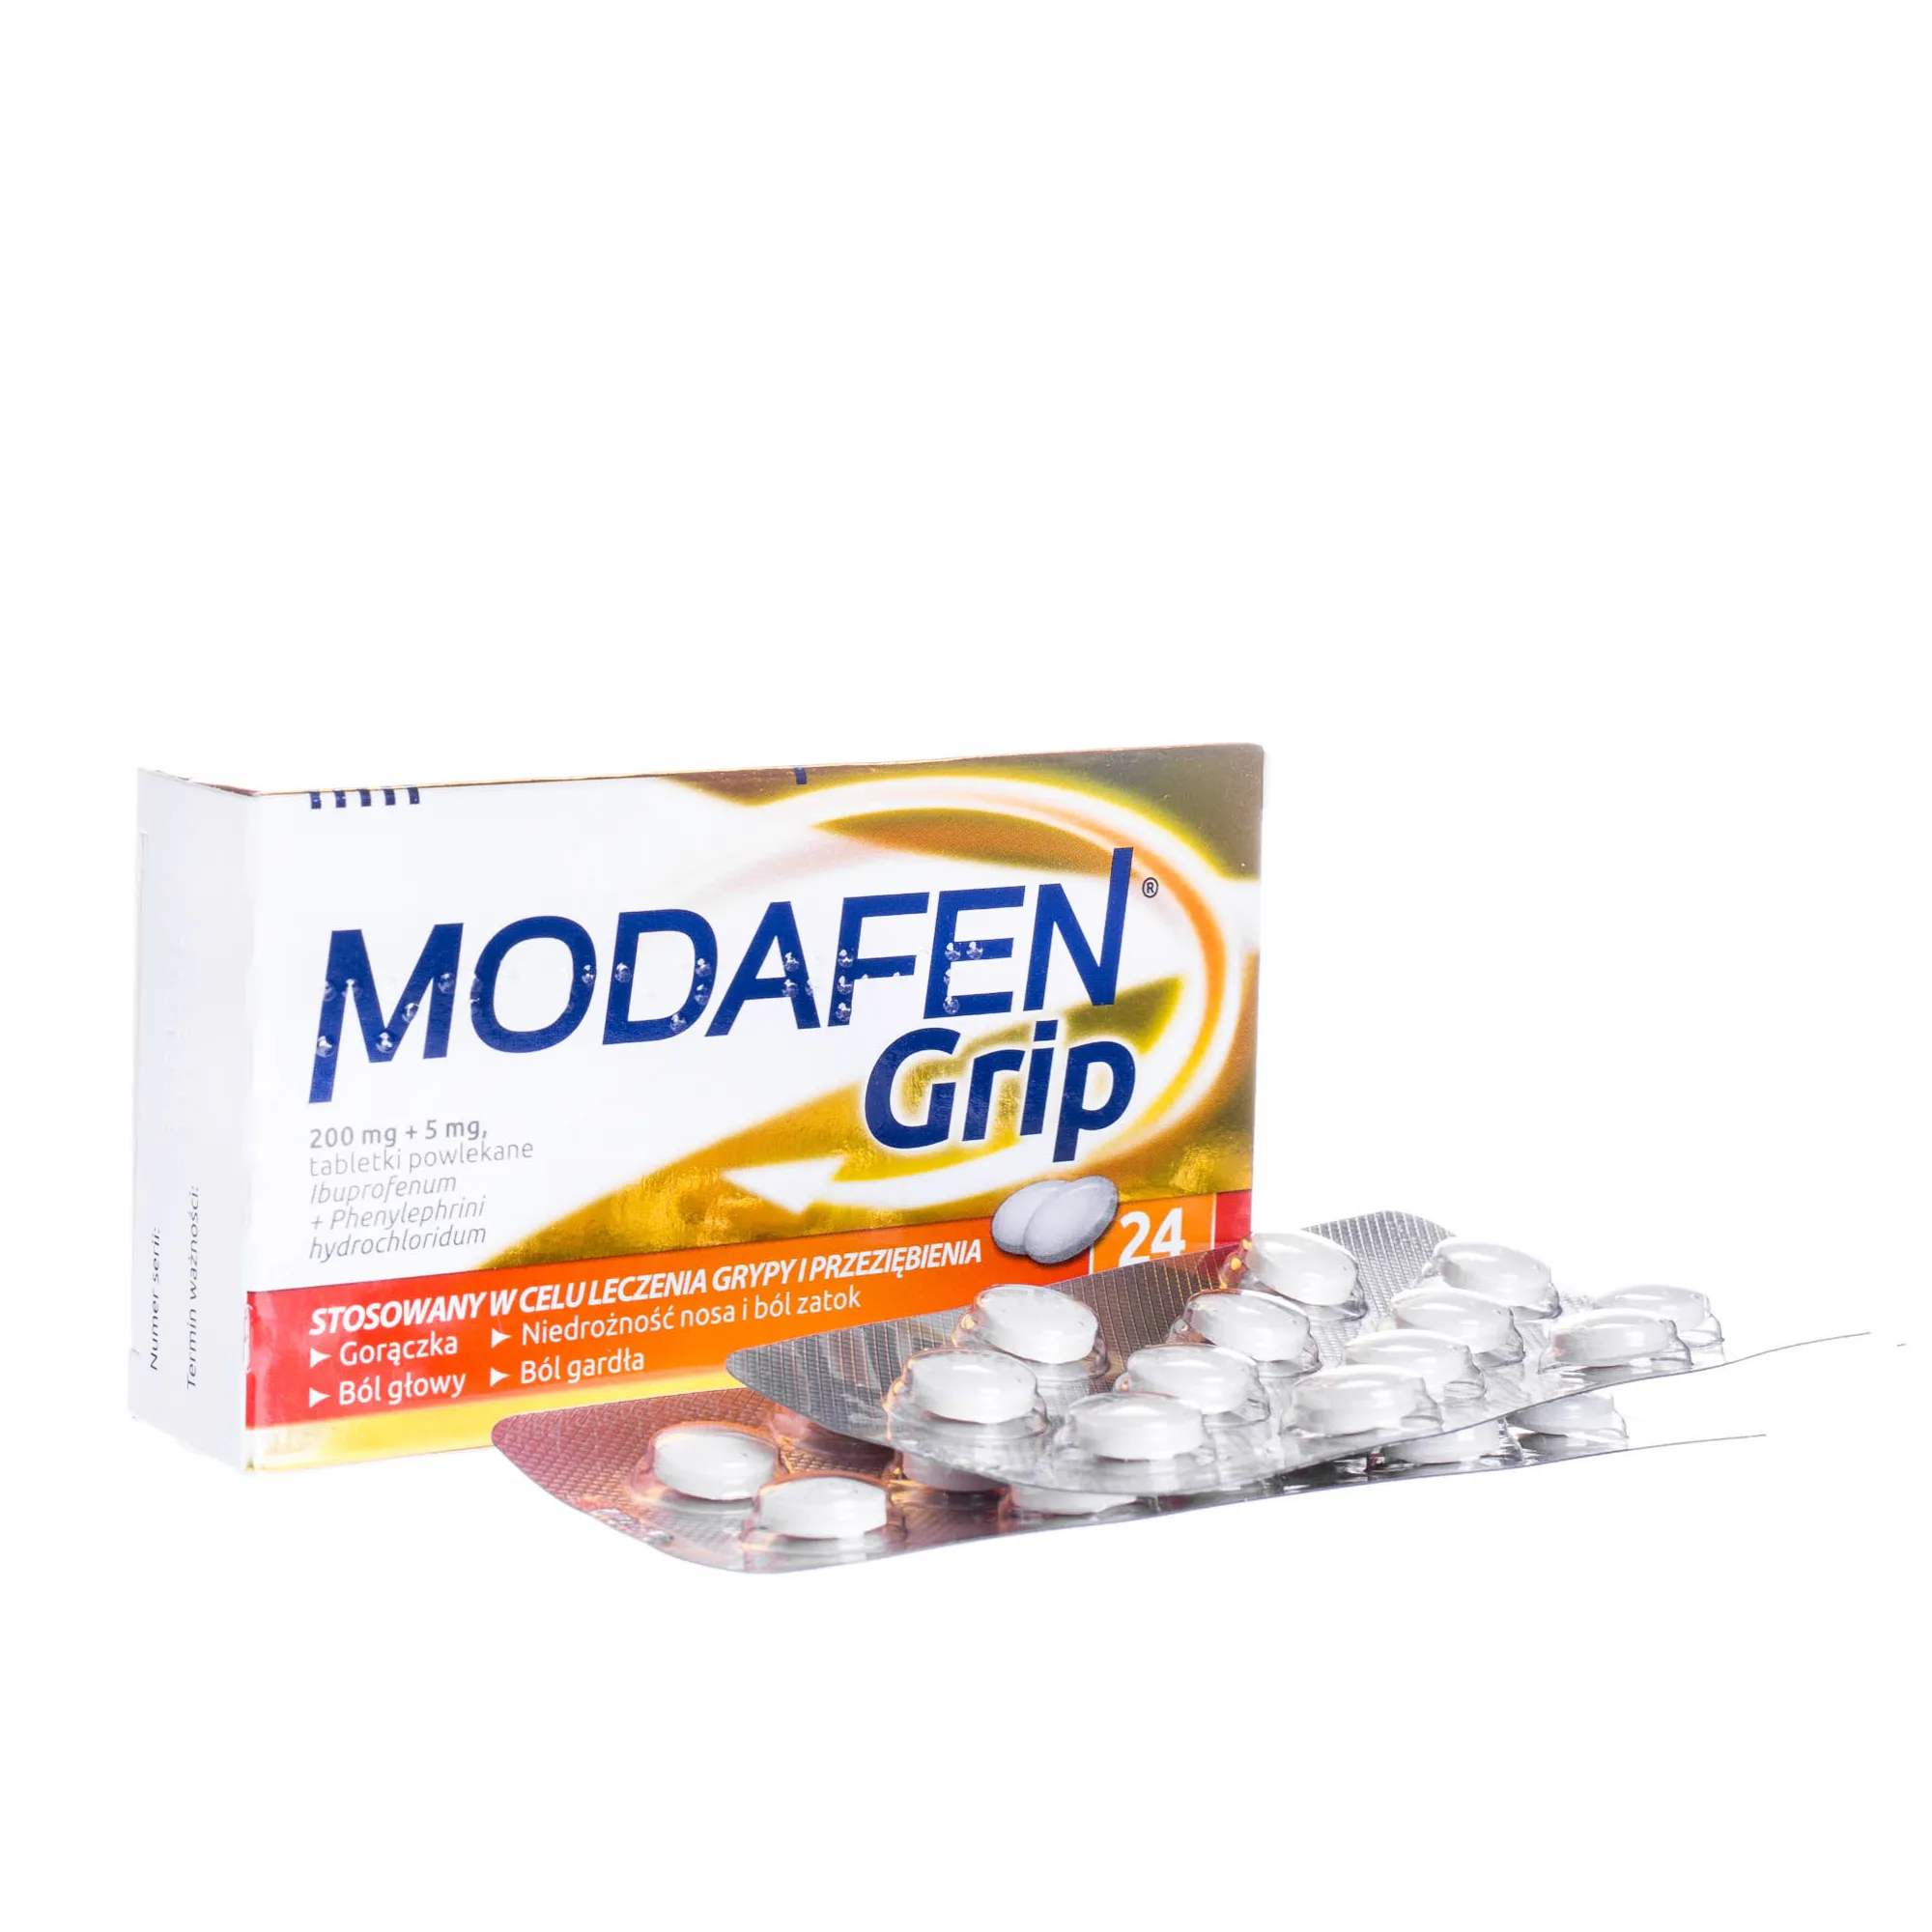 Modafen Grip 200 mg + 5 mg - 24 tabletki stosowany w leczeniu grypy i przeziębienia